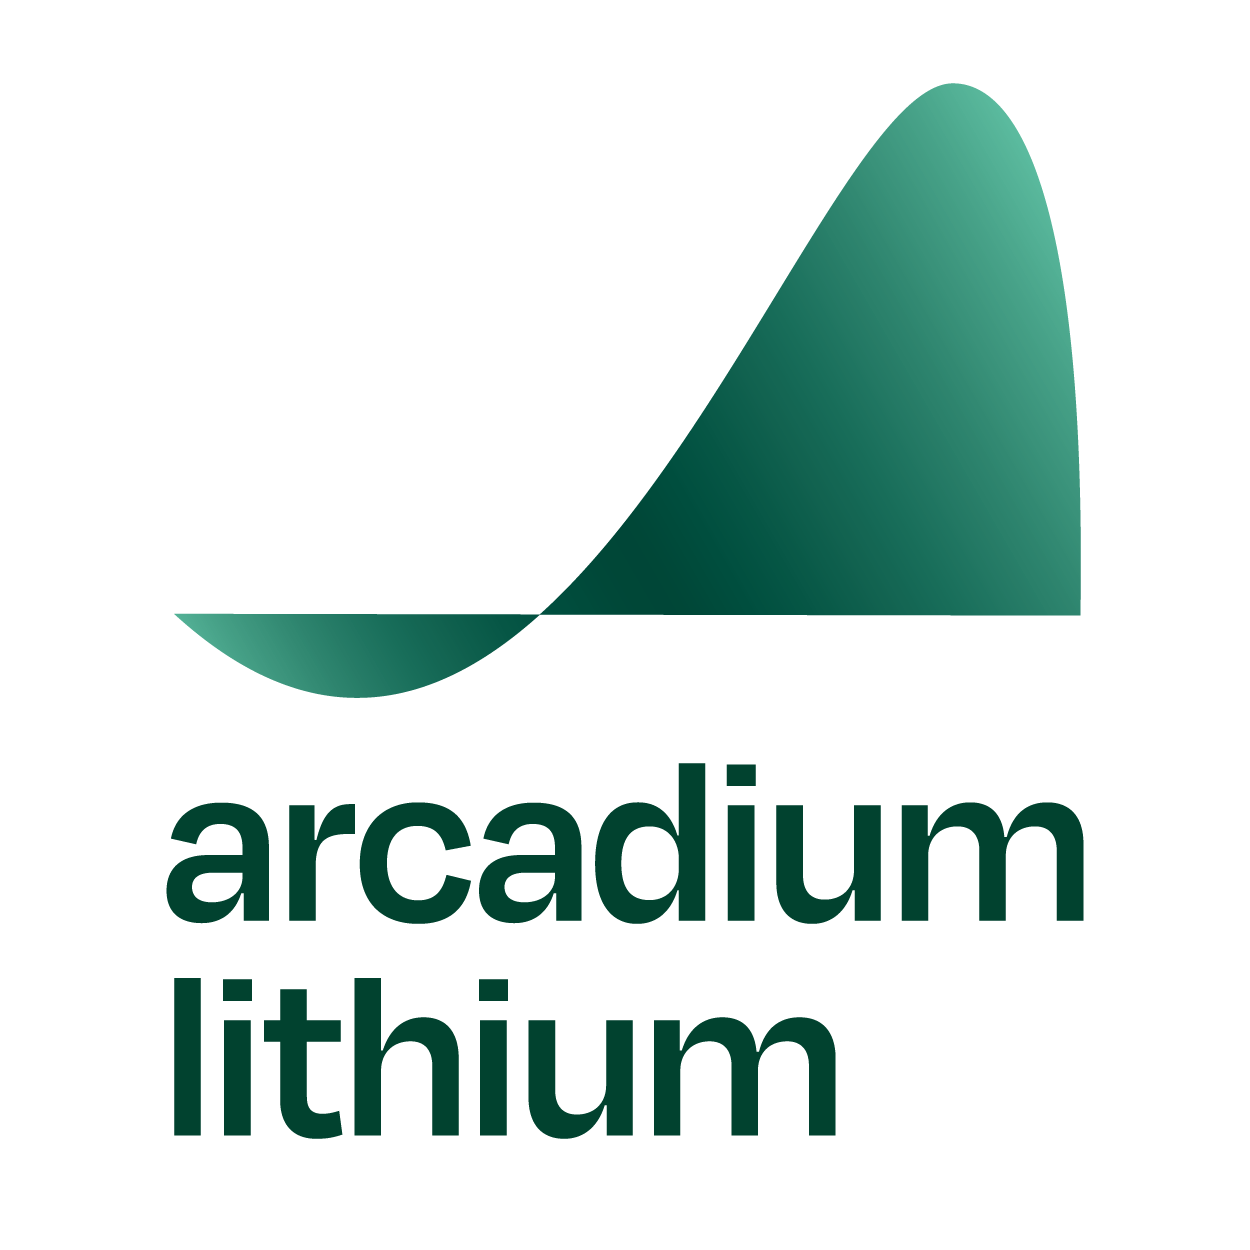 Arcadium Lithium